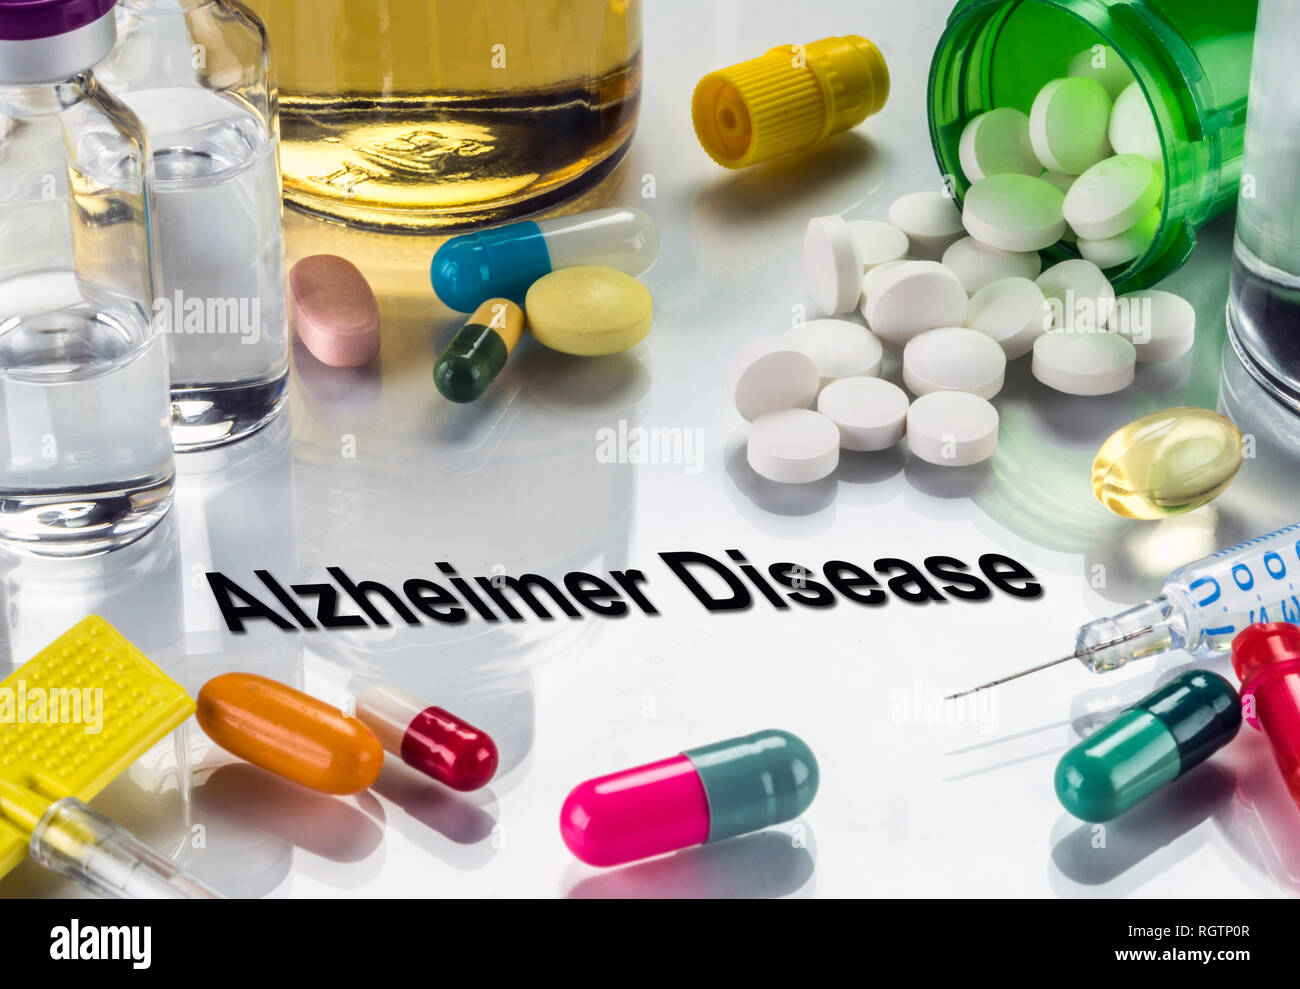 Medical diagnosis alzheimer disease, conceptual image, horizontal composition Stock Photo